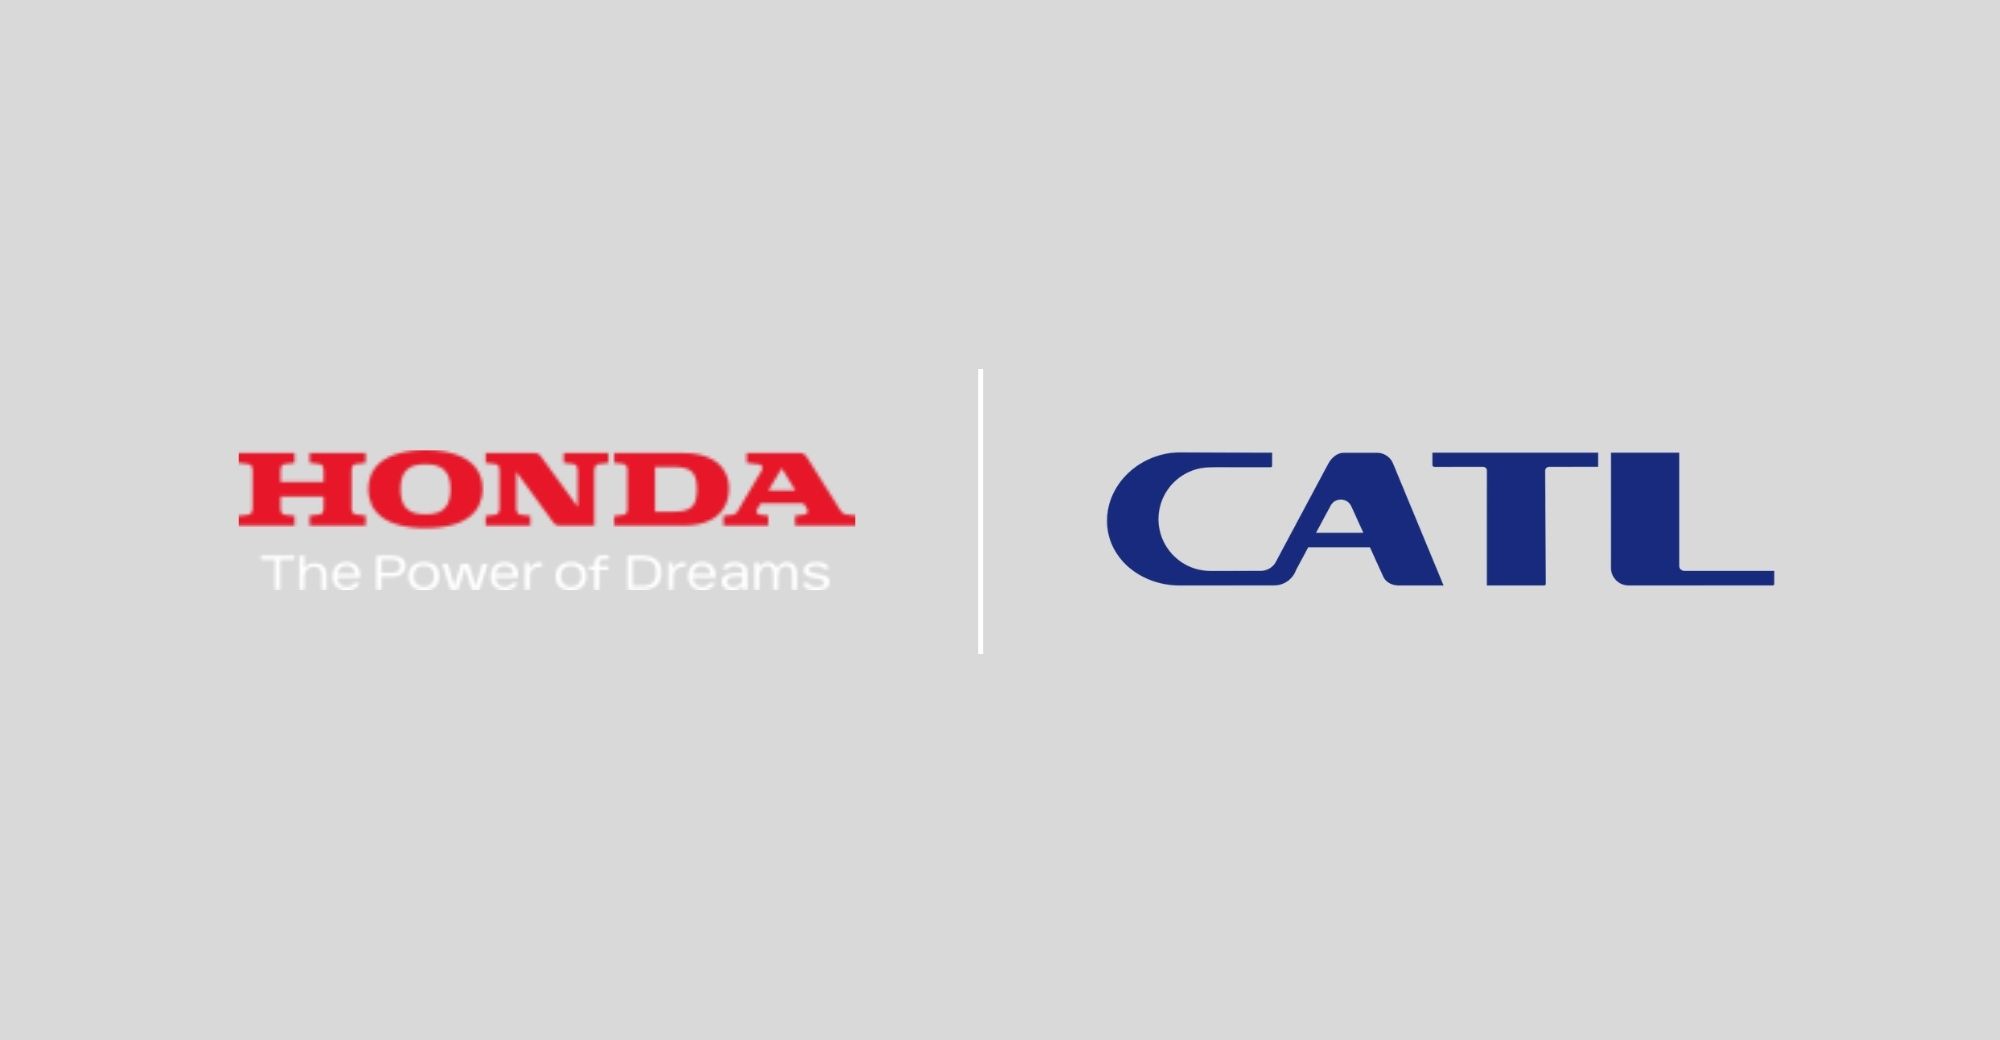 Naabot ng Honda China ang pang-matagalang kasunduan sa pagbili sa CATL